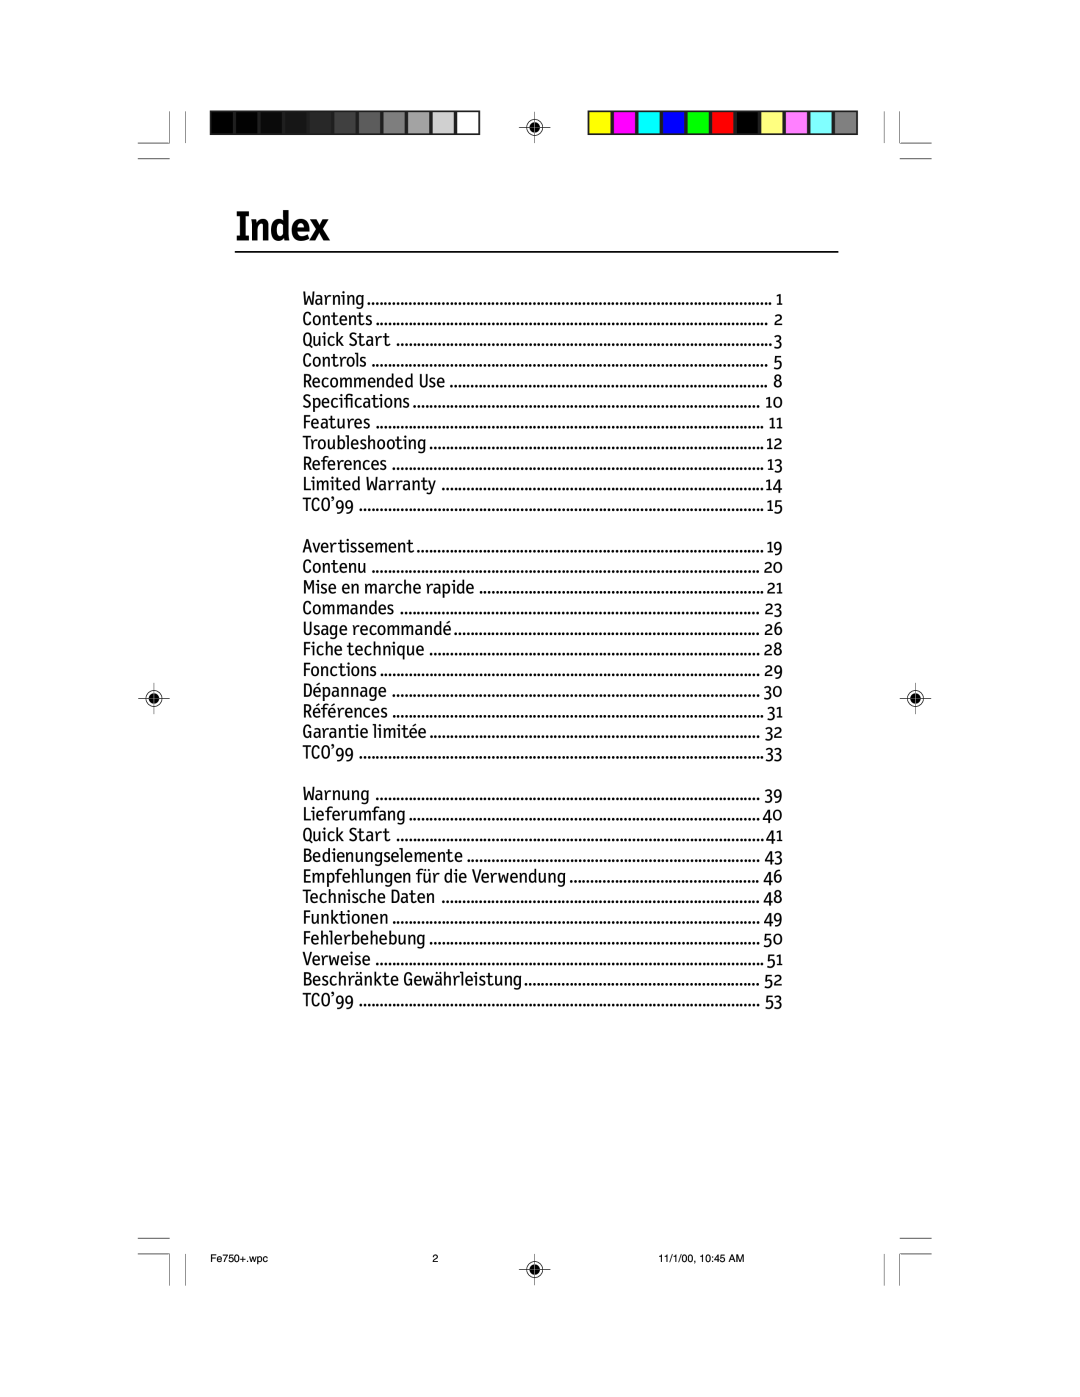 NEC FE750 Plus user manual Index 